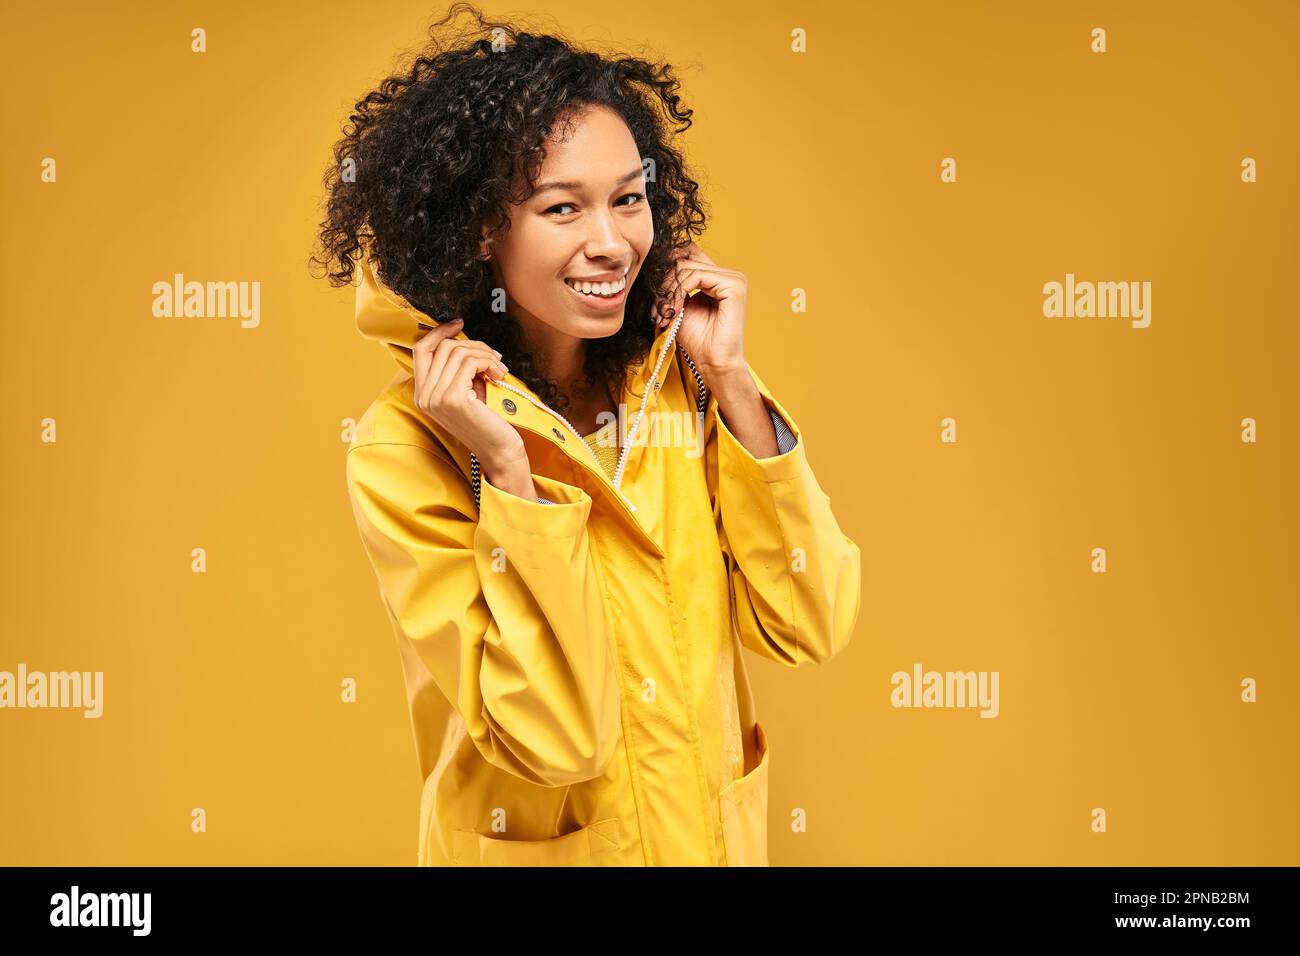 Eine glückliche afroamerikanische Frau trägt einen gelben Regenmantel mit Kapuze für regnerisches Wetter Stockfoto